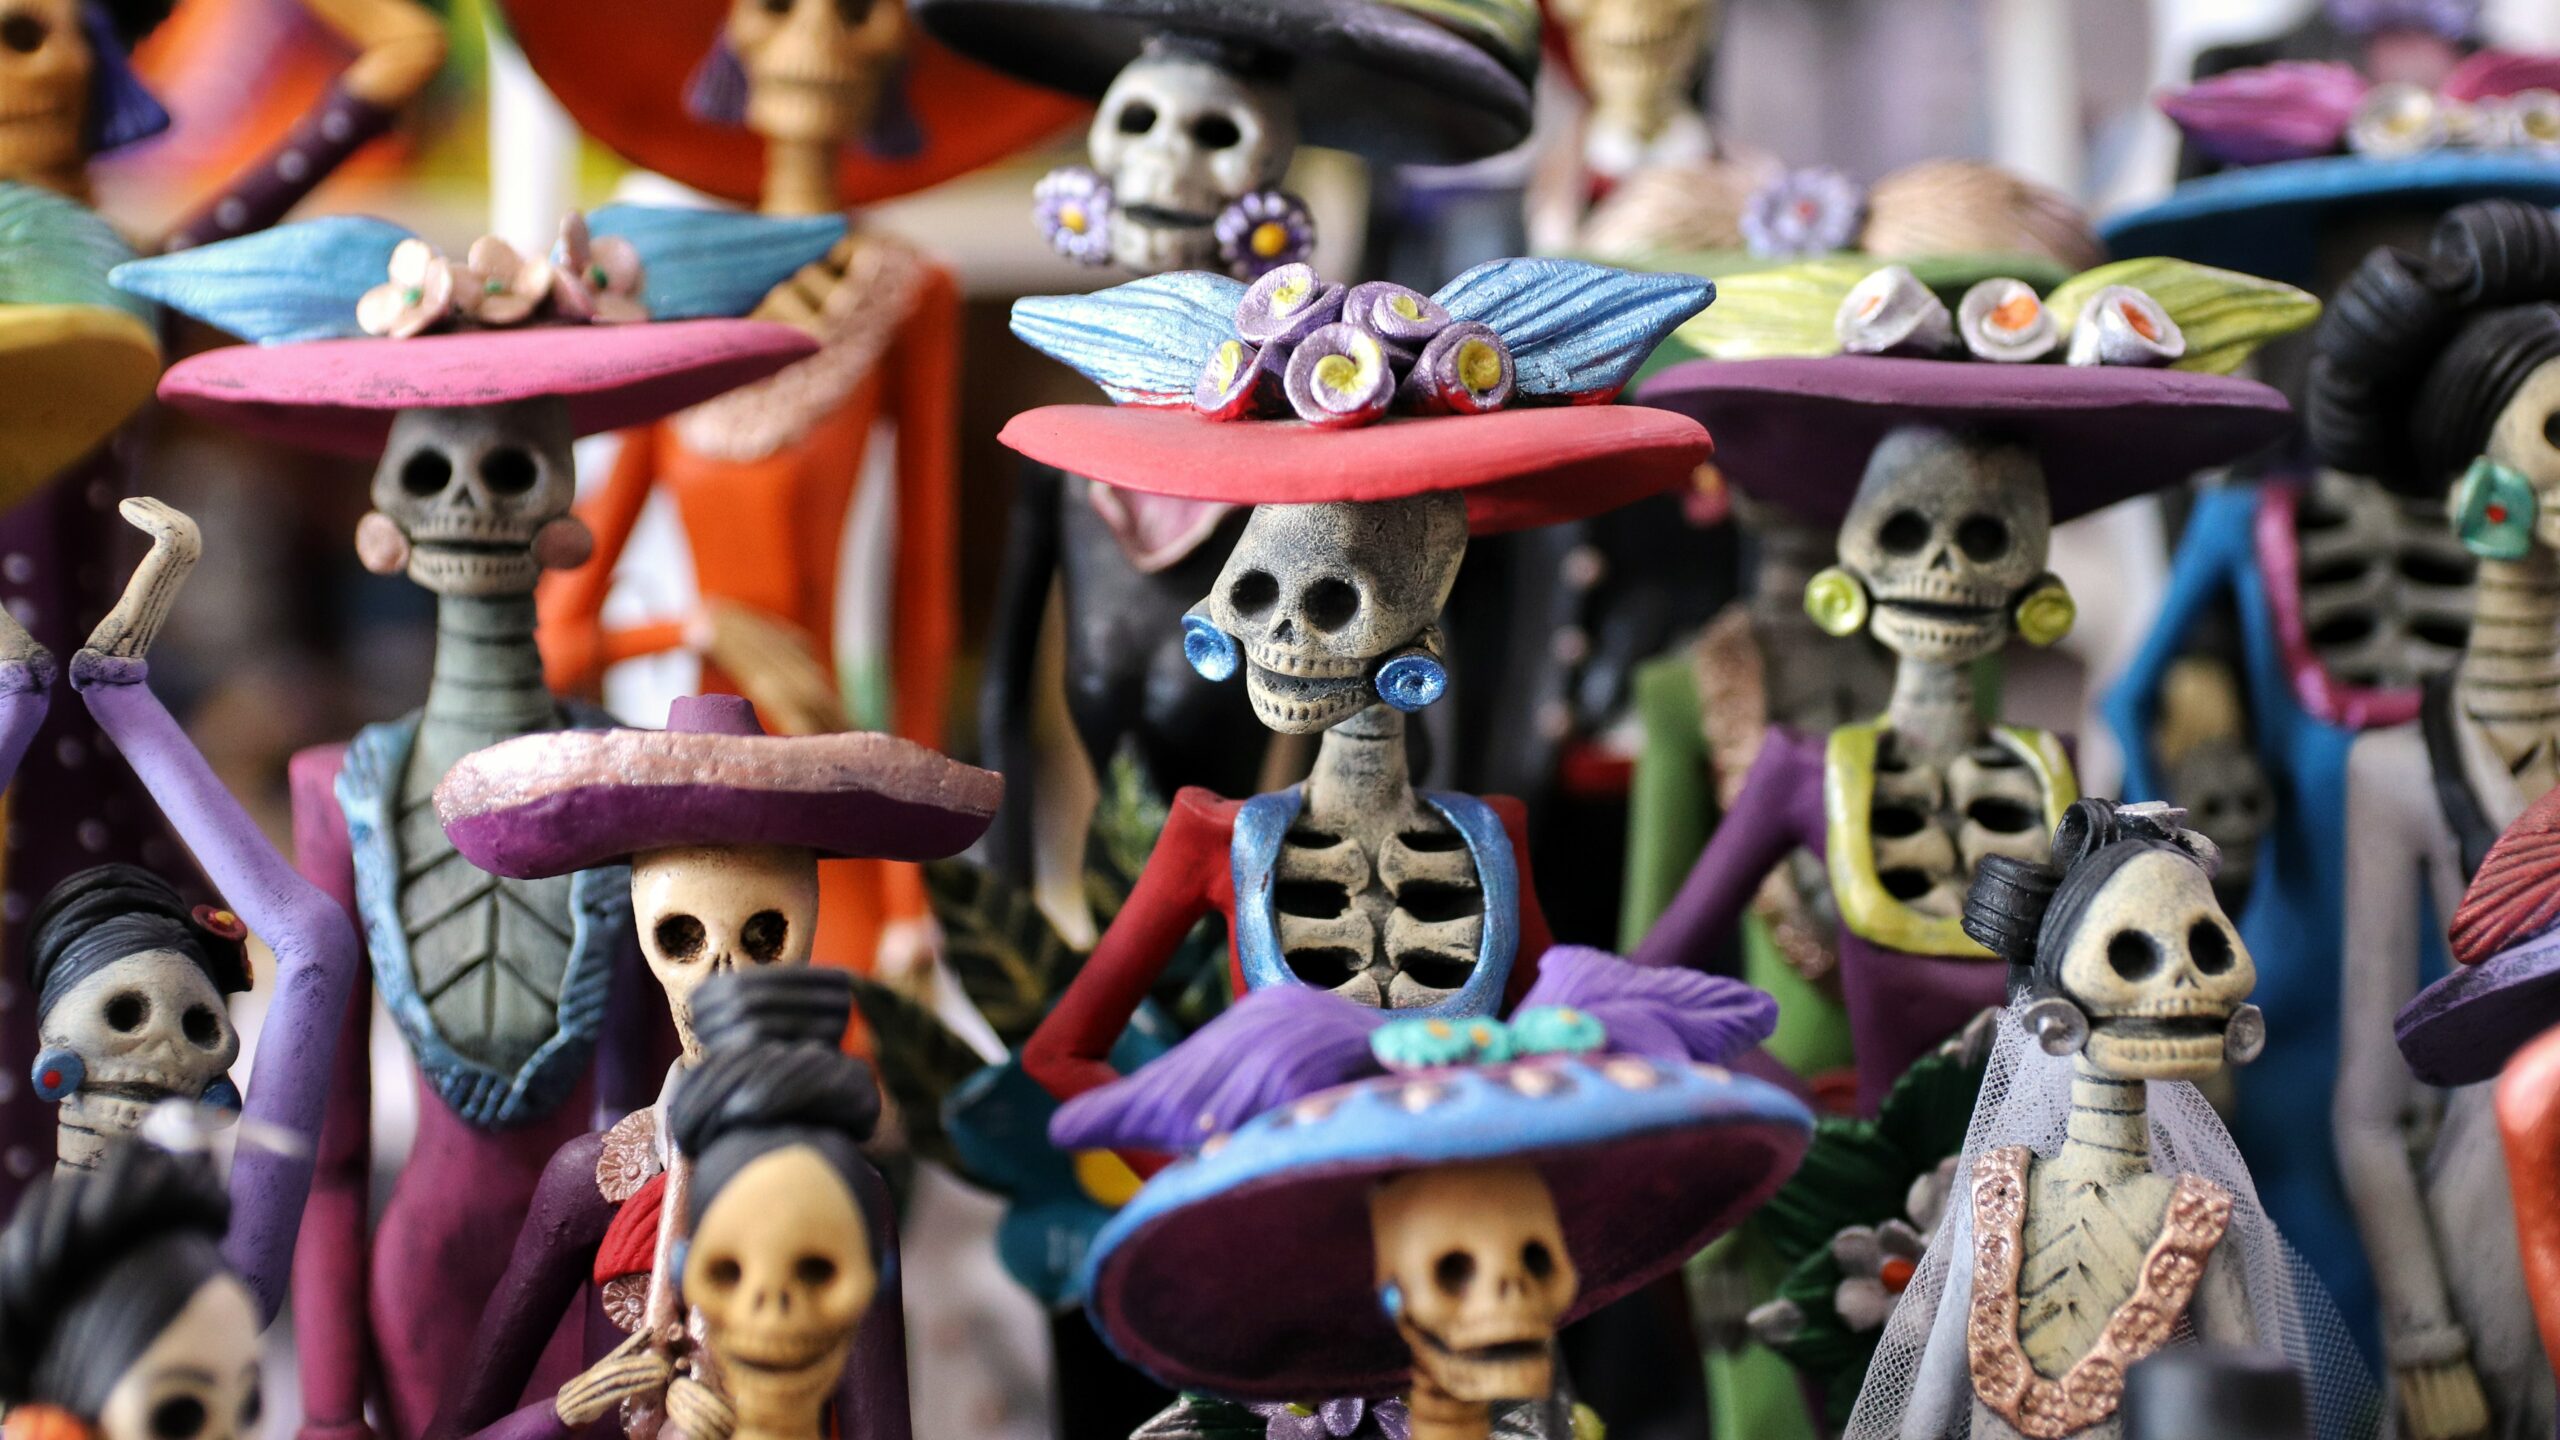 Mexican Figurines for el Dia de los muertos